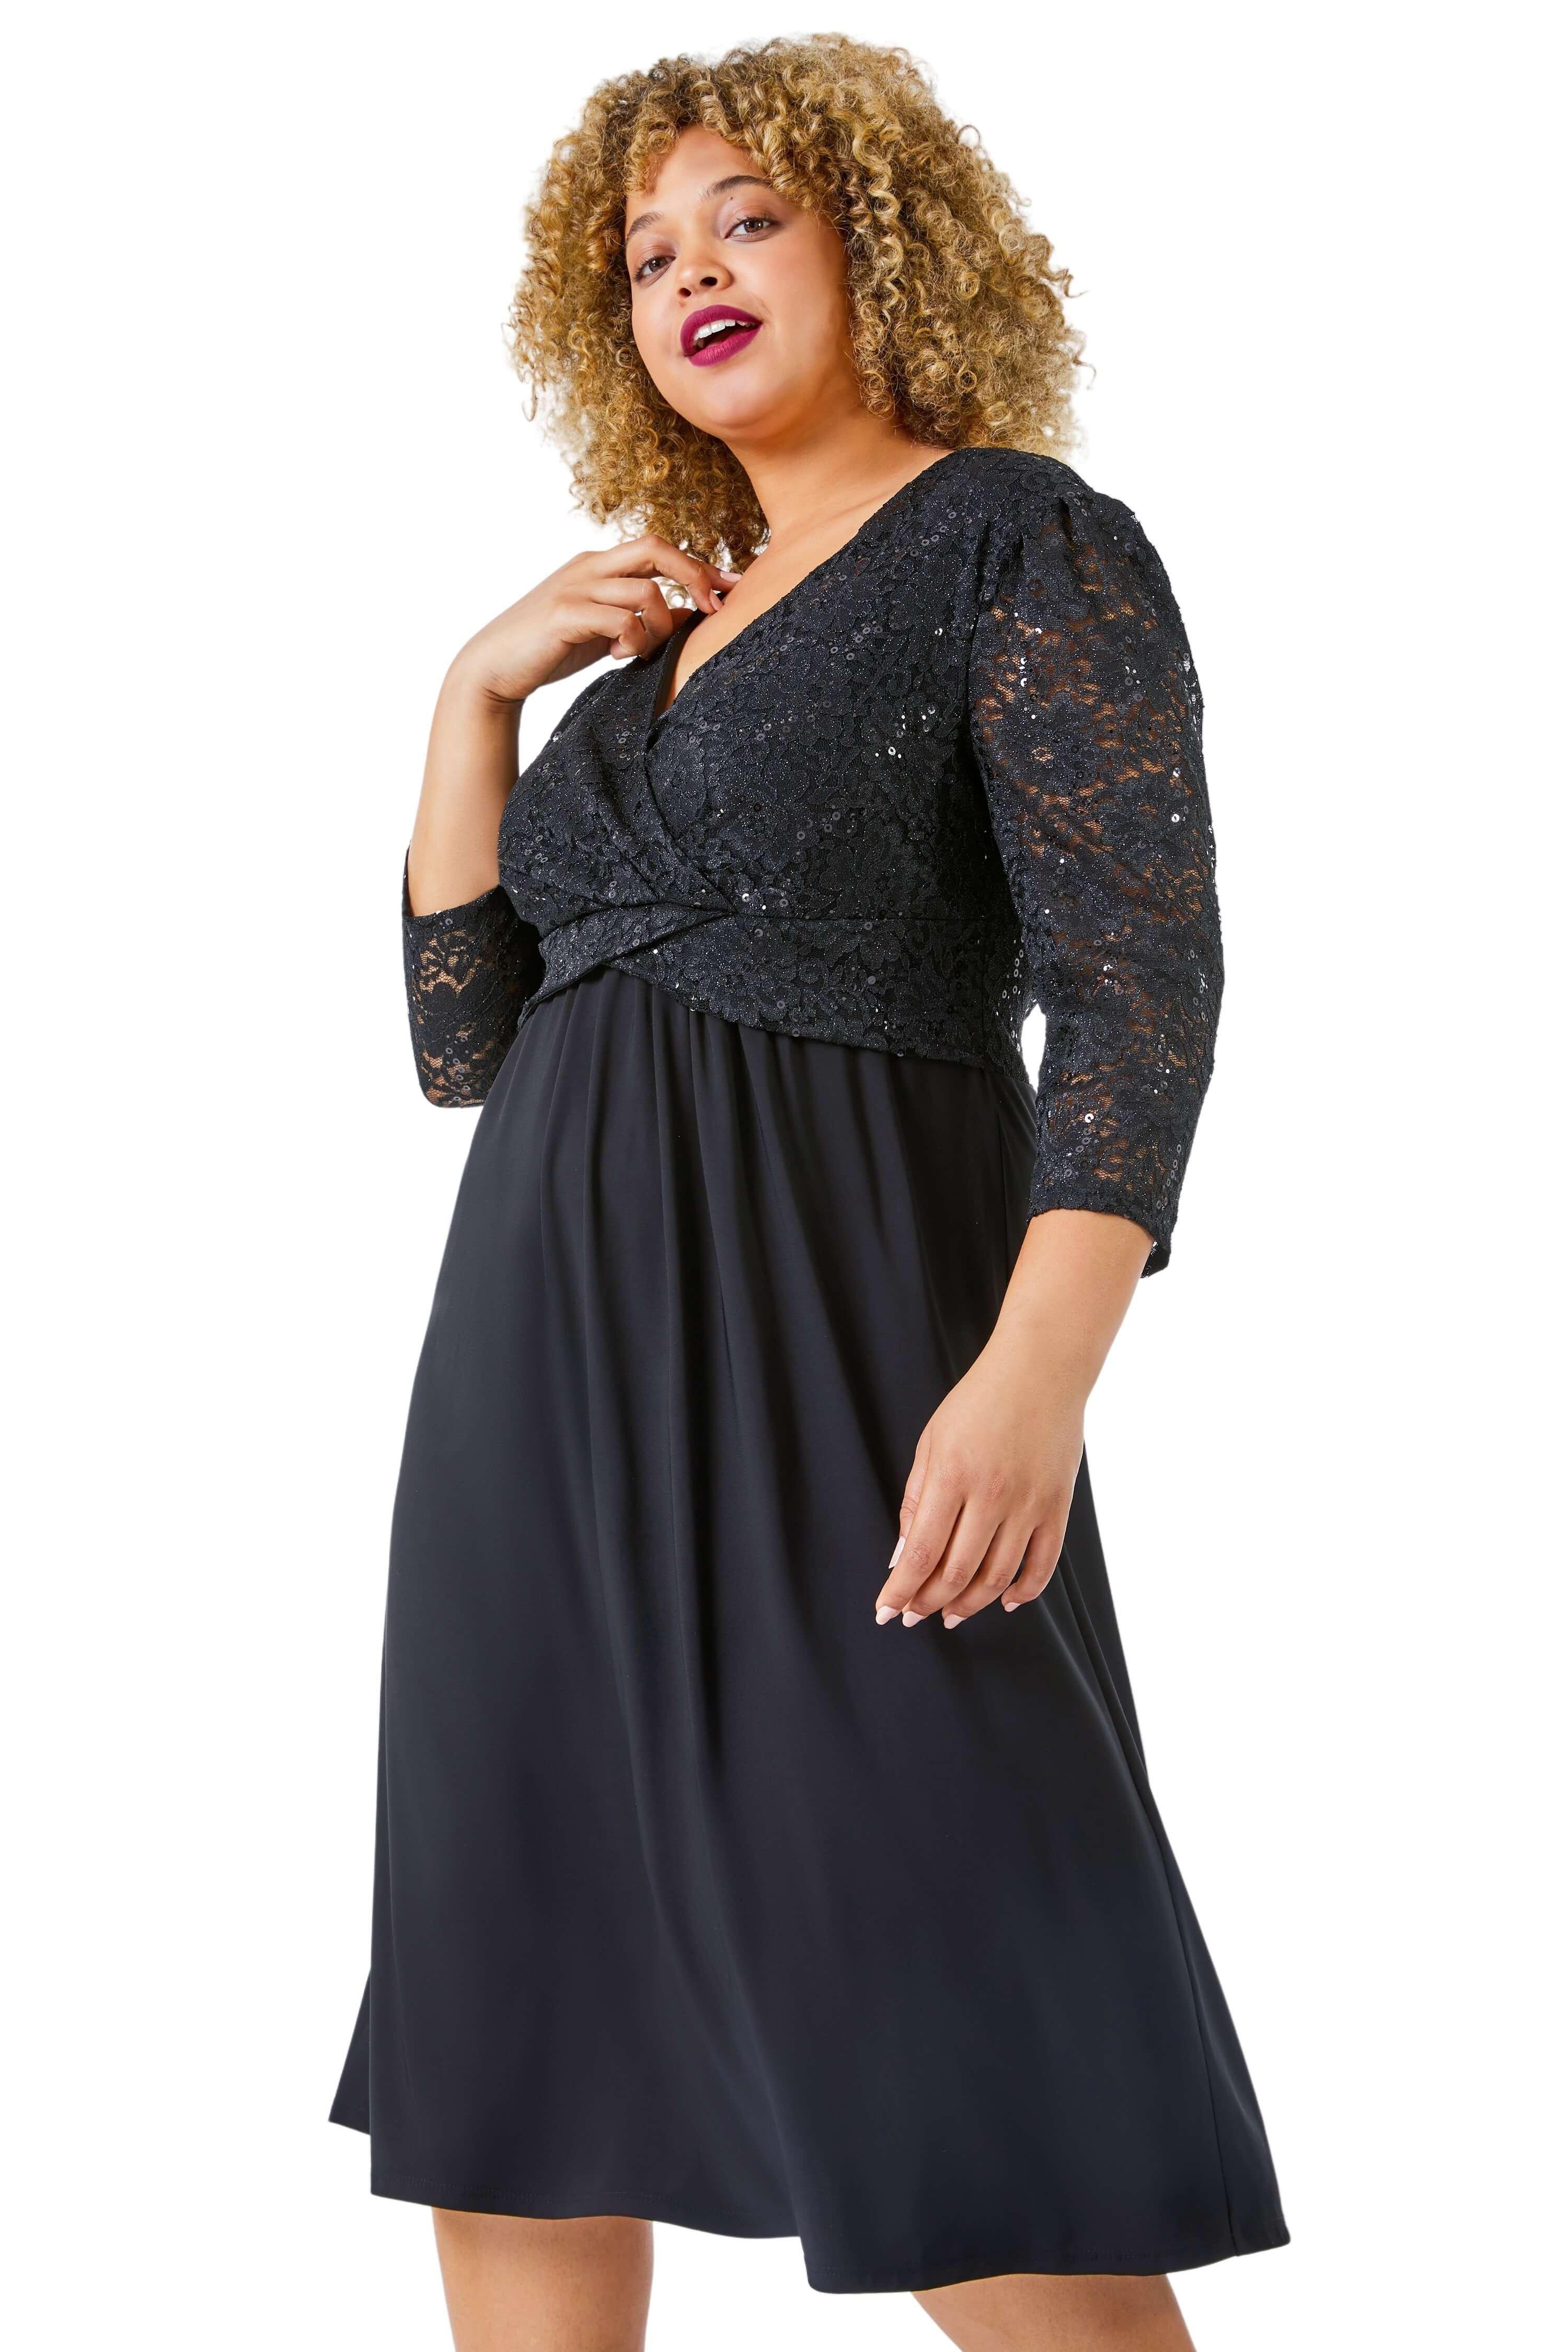 Кружевное платье с запахом и пайетками Curve Roman, черный платье с запахом roxane s синий